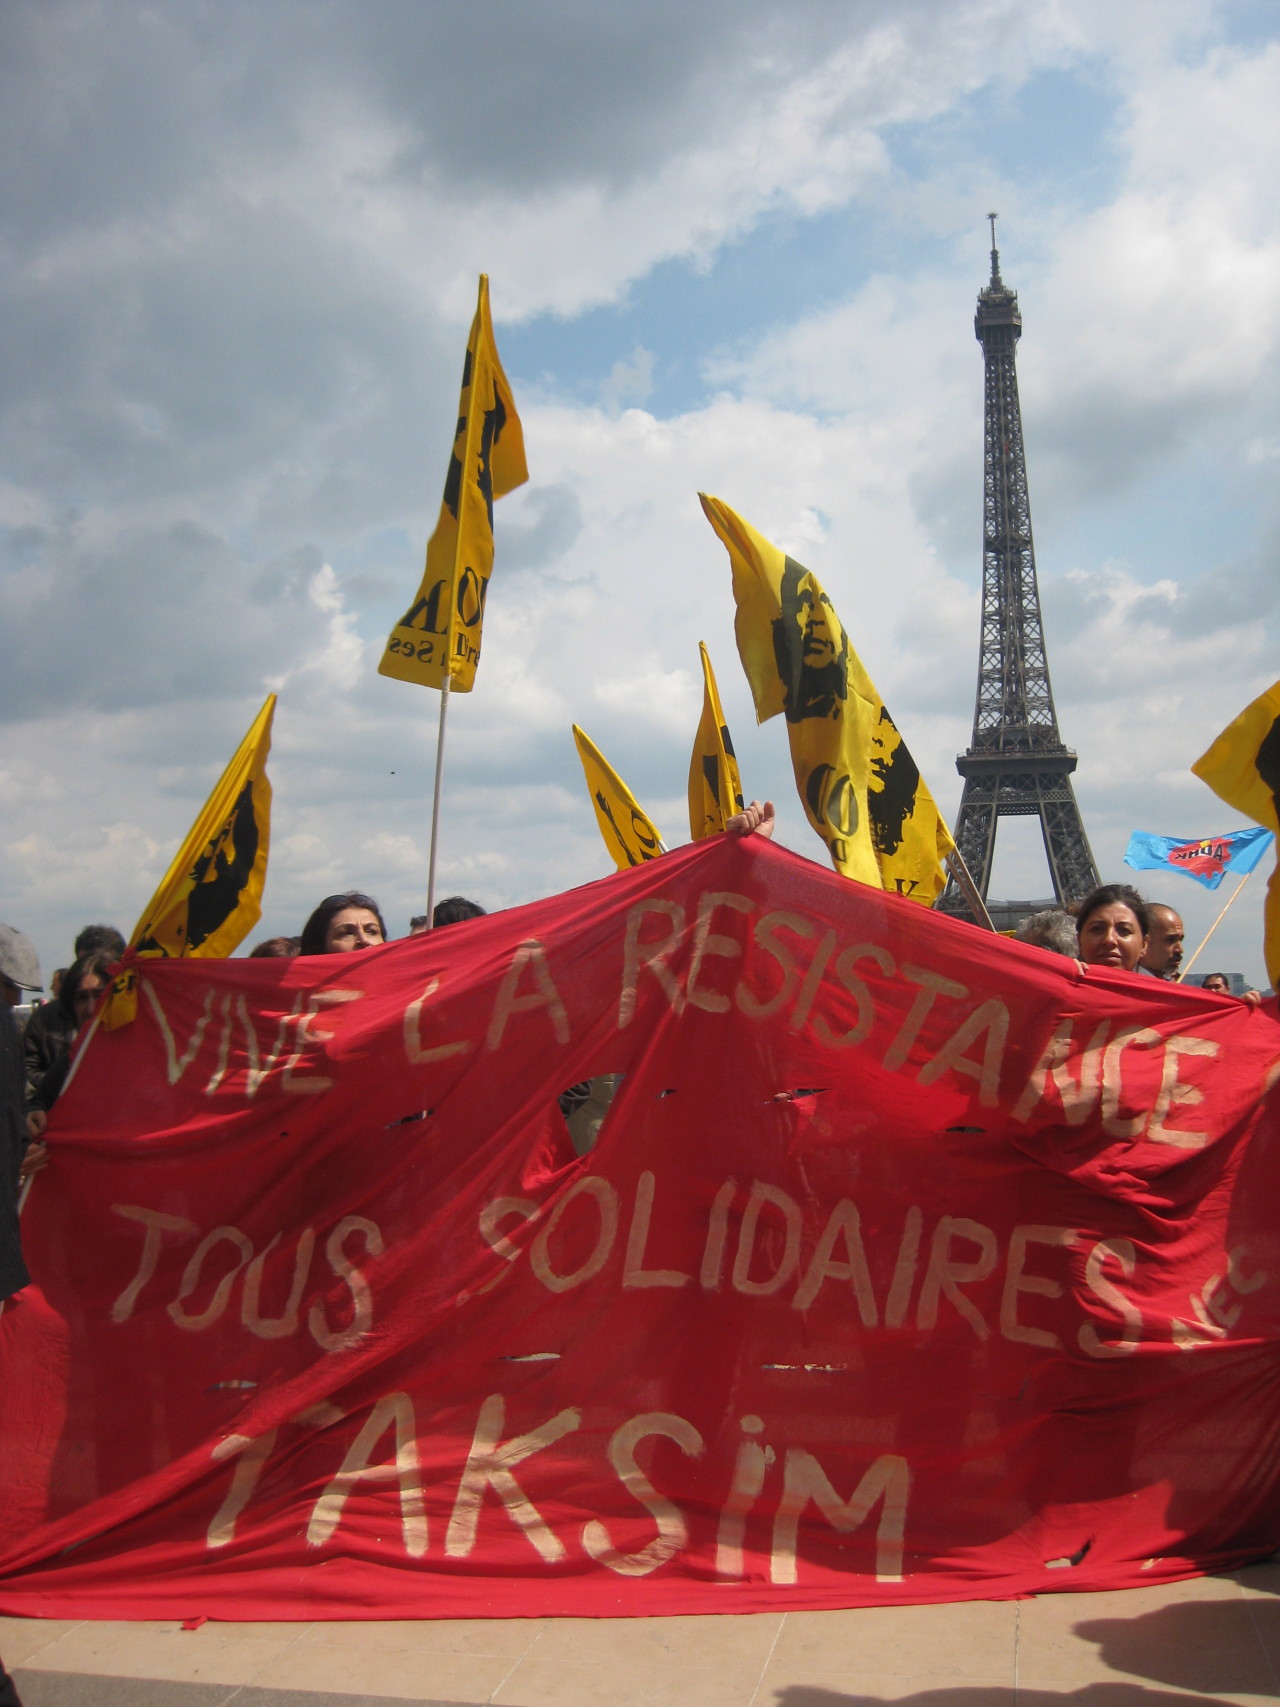 &#8220;Long live the resistance&#8221; says Parisians
#taksim #gezi #paris